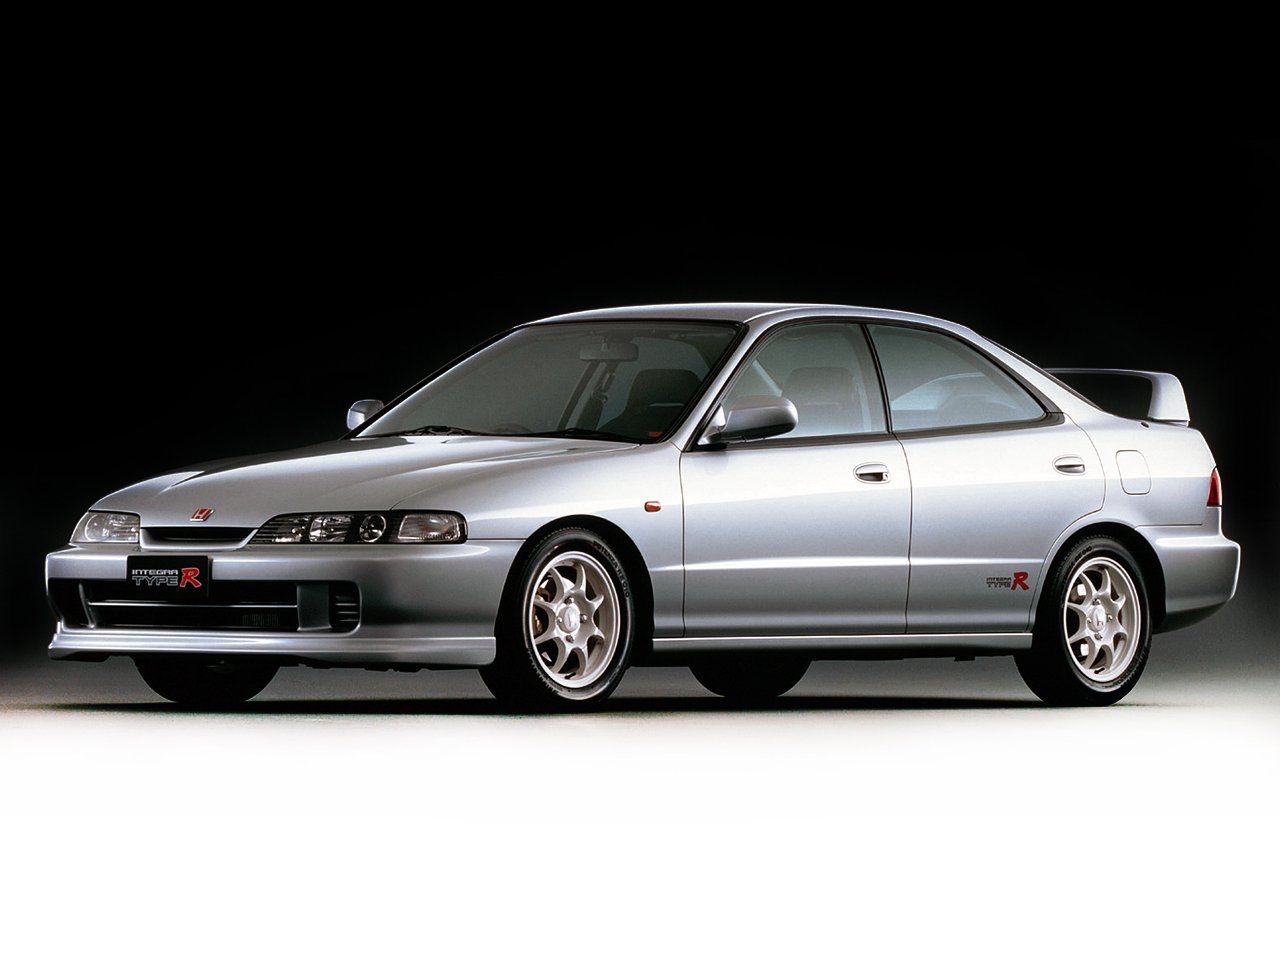 седан Honda Integra 1995 - 2001г выпуска модификация 1.6 AT (120 л.с.)